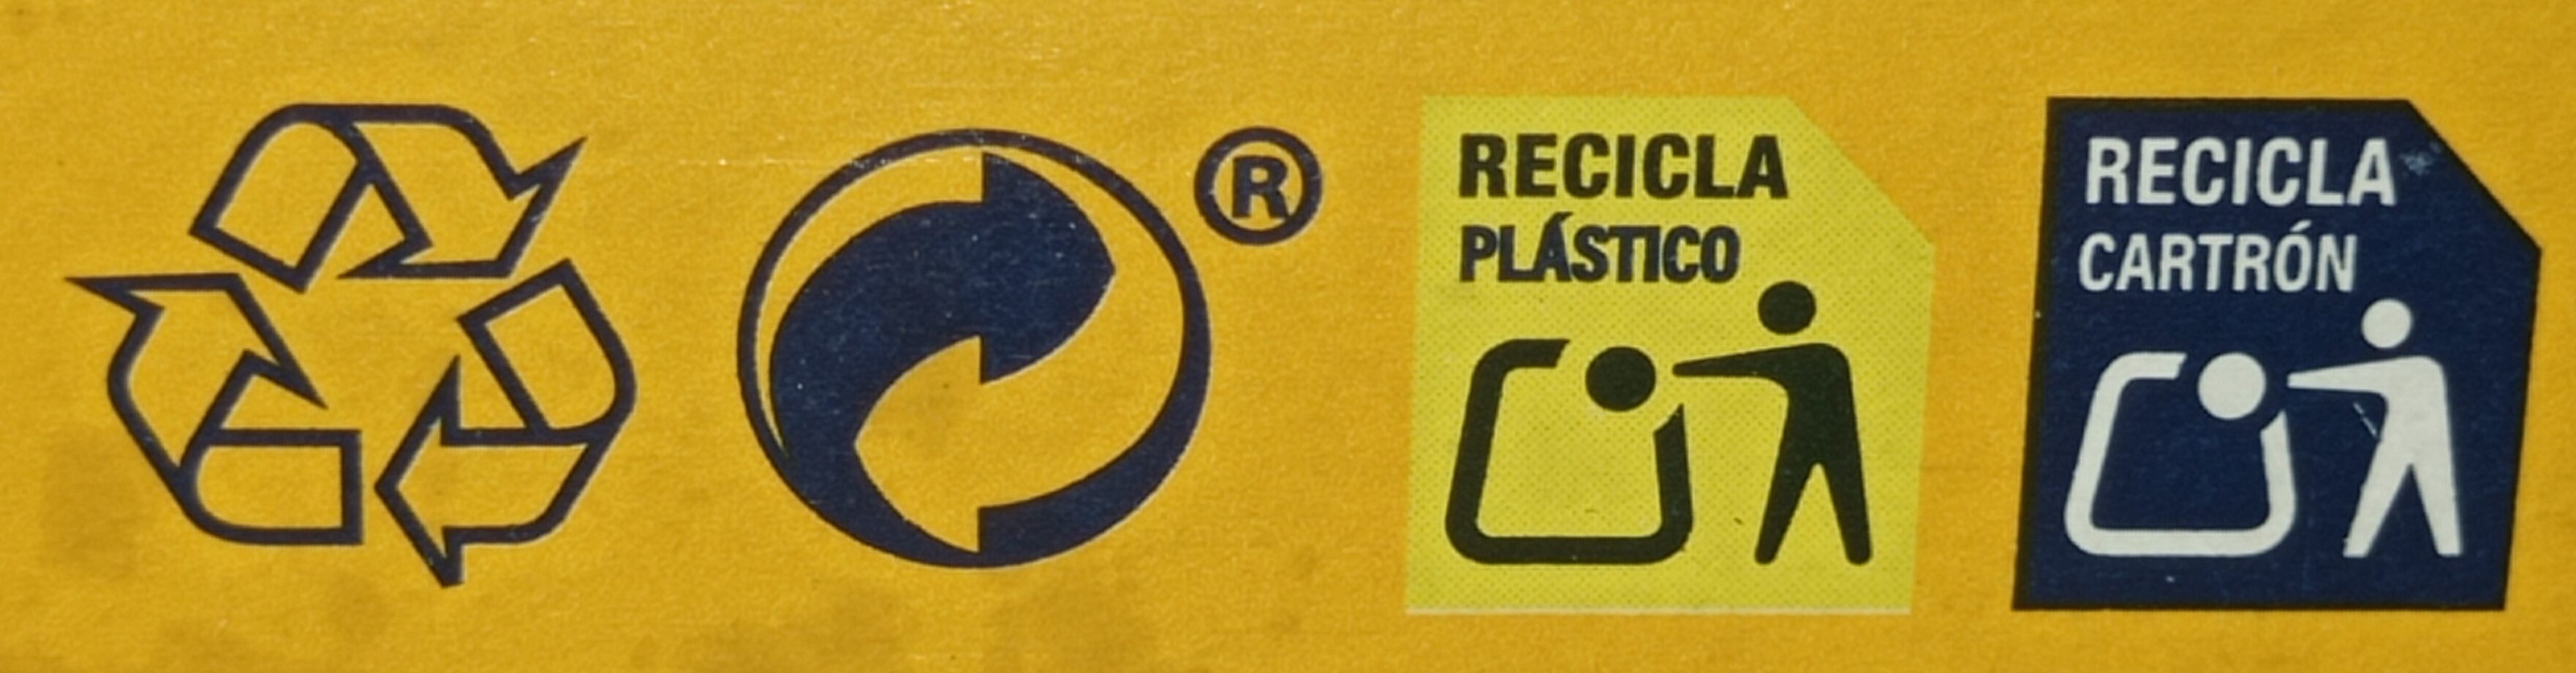 Mini Tostas Rectangulares - Instruccions de reciclatge i/o informació d’embalatge - es